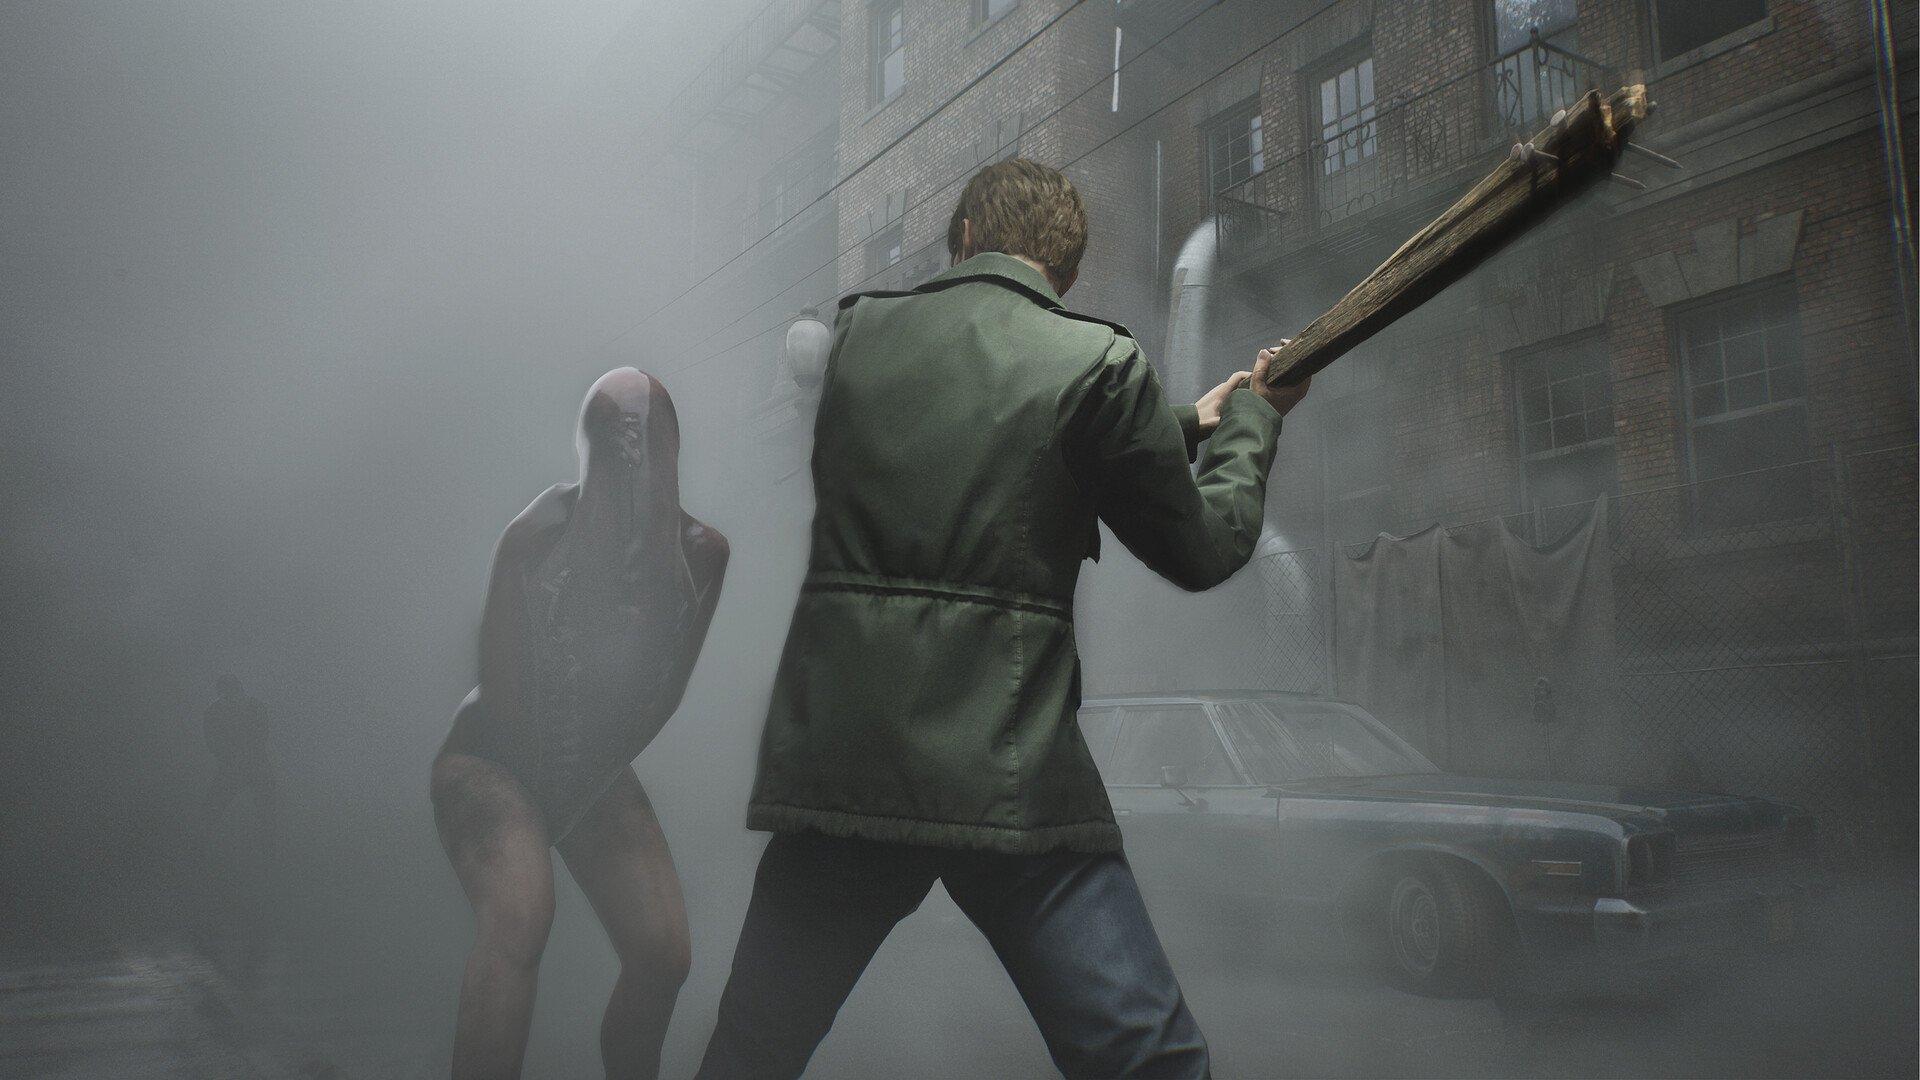 PS5 y Steam reciben la versión actualizada de Silent Hill 2, Konami, PlayStation, México, España, MX, DEPOR-PLAY